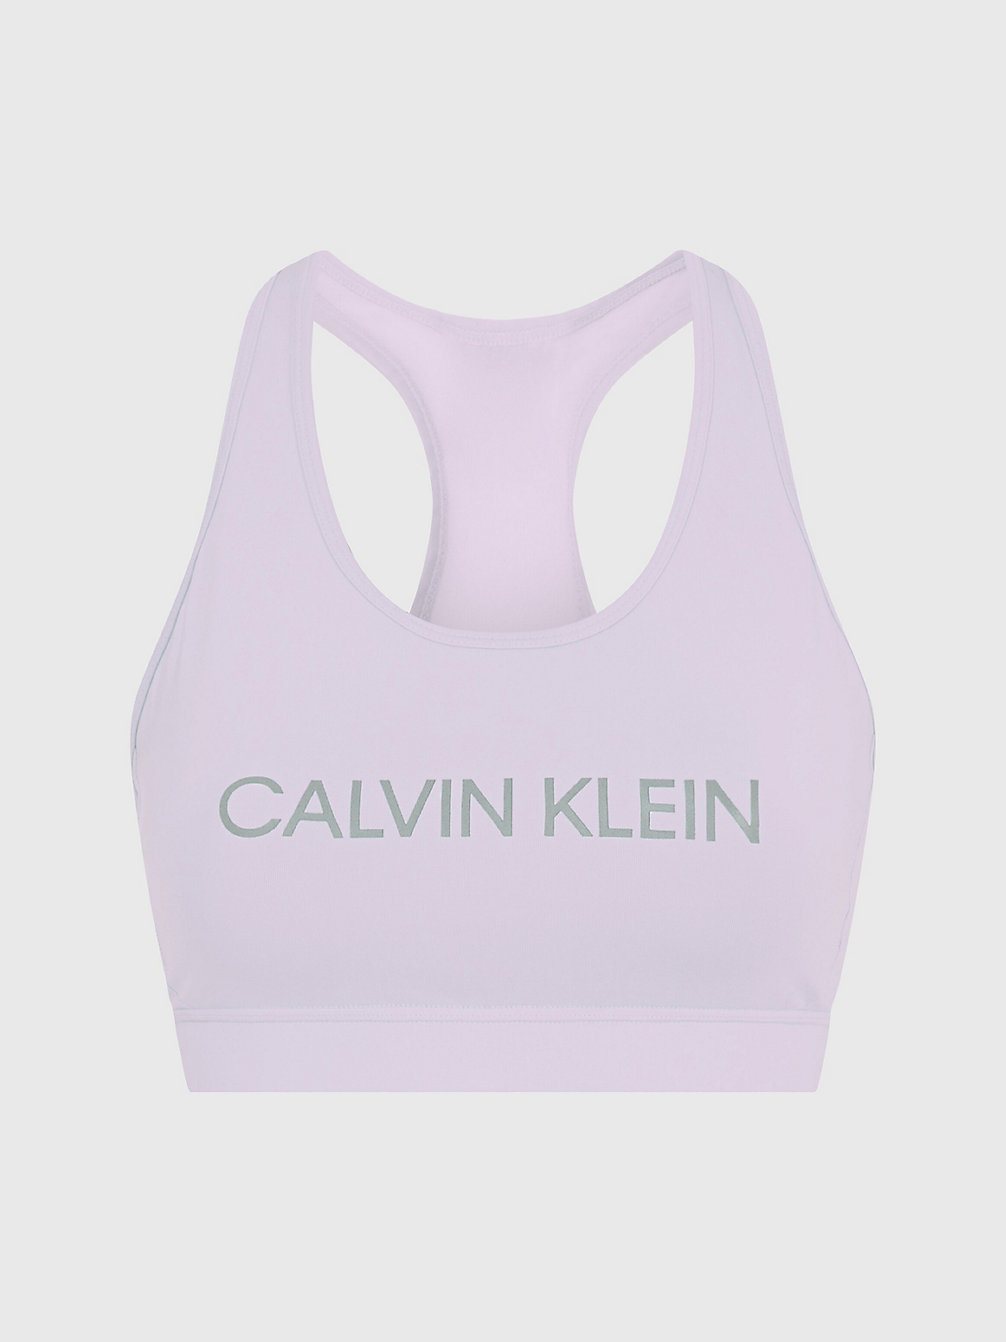 PURPLE HEATHER High Impact Sports Bra undefined women Calvin Klein